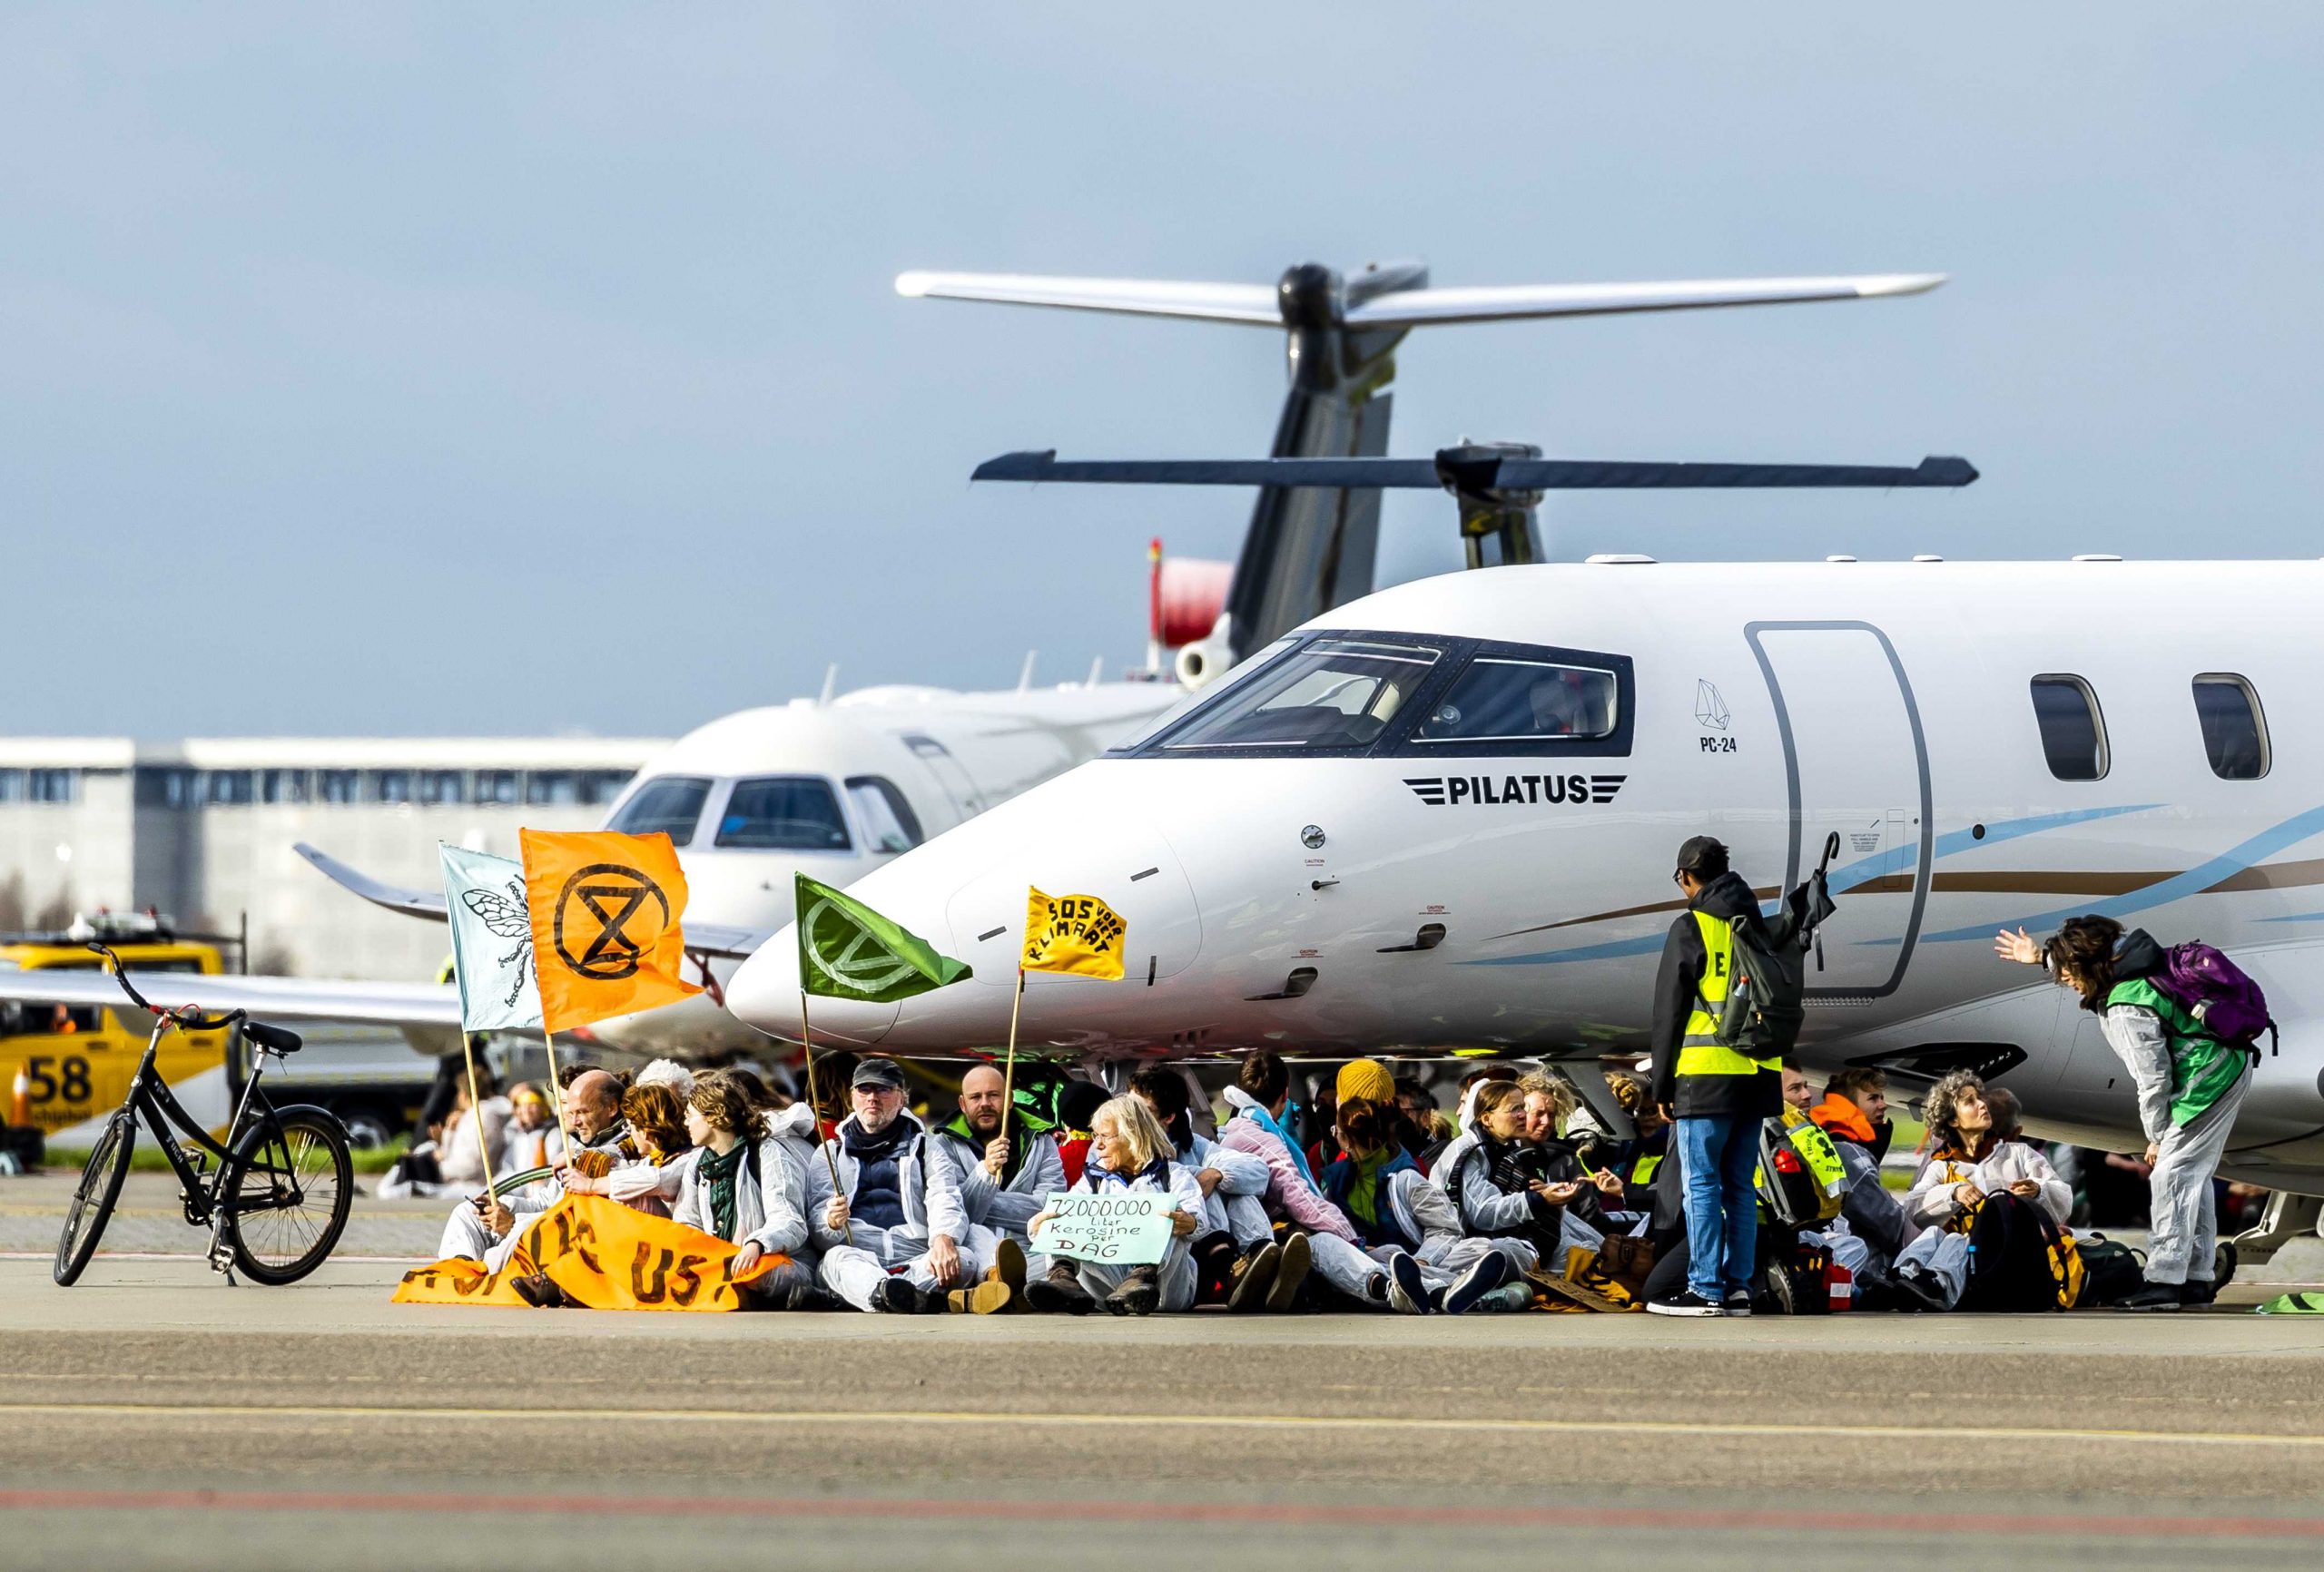 环保分子闯荷兰机场    阻私人机起飞 百人被捕